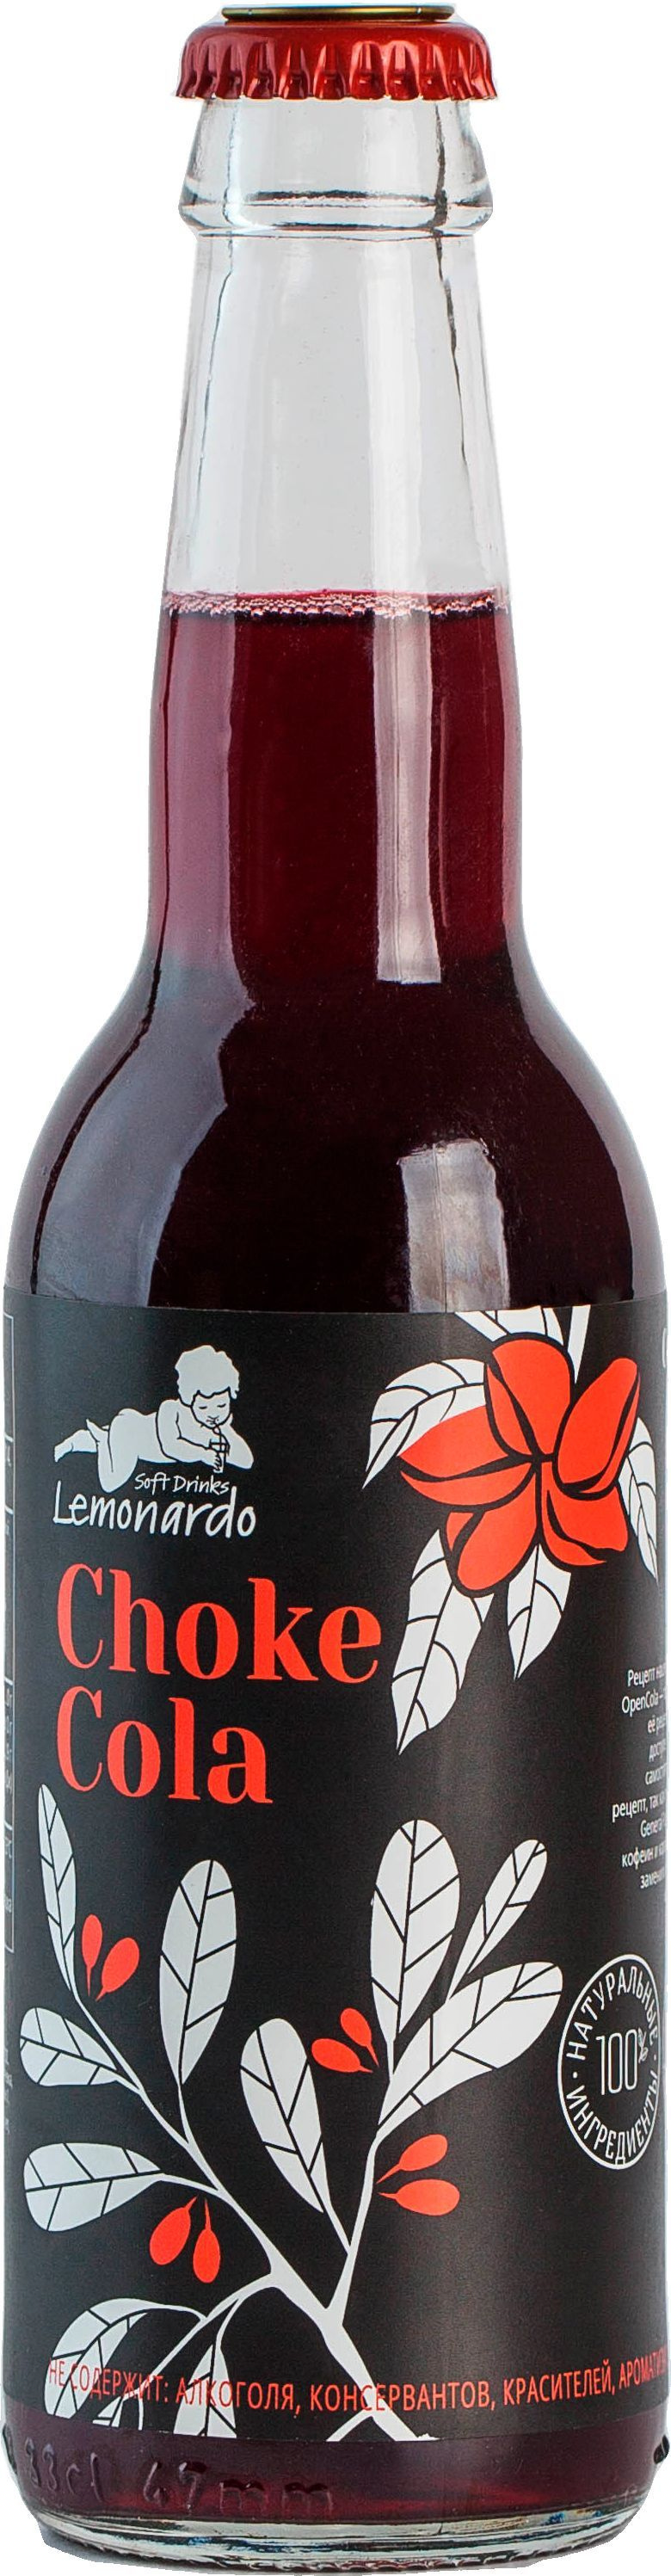 Натуральная кола из черноплодной рябины / Lemonardo Choke Cola